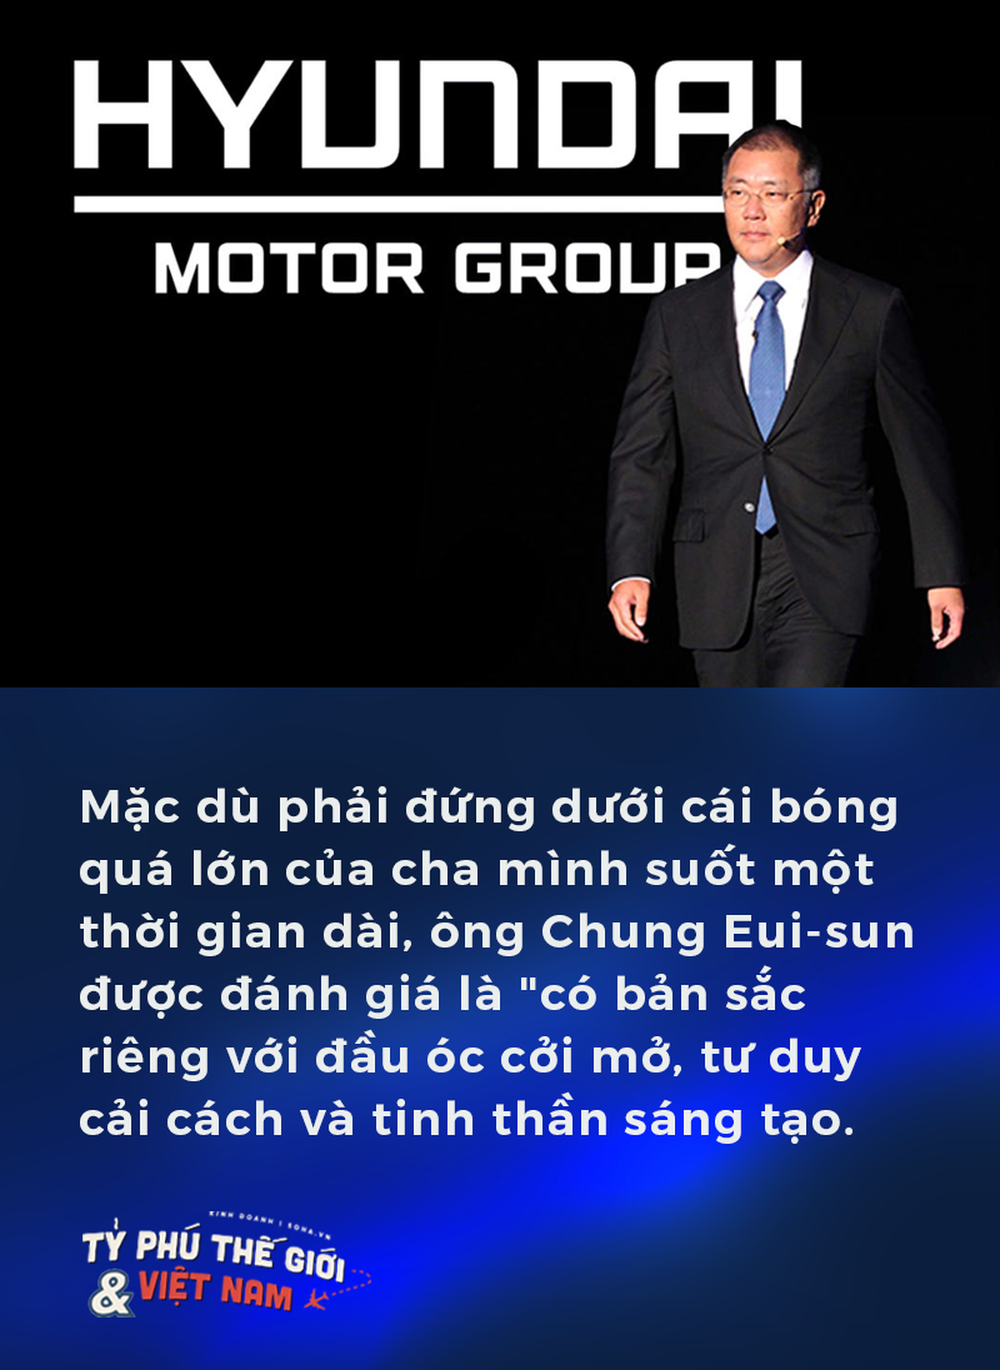  Chủ nhân mới của chiếc ngai vàng Hyundai, vĩnh biệt vị thế theo đuôi và át chủ bài Việt Nam - Ảnh 4.